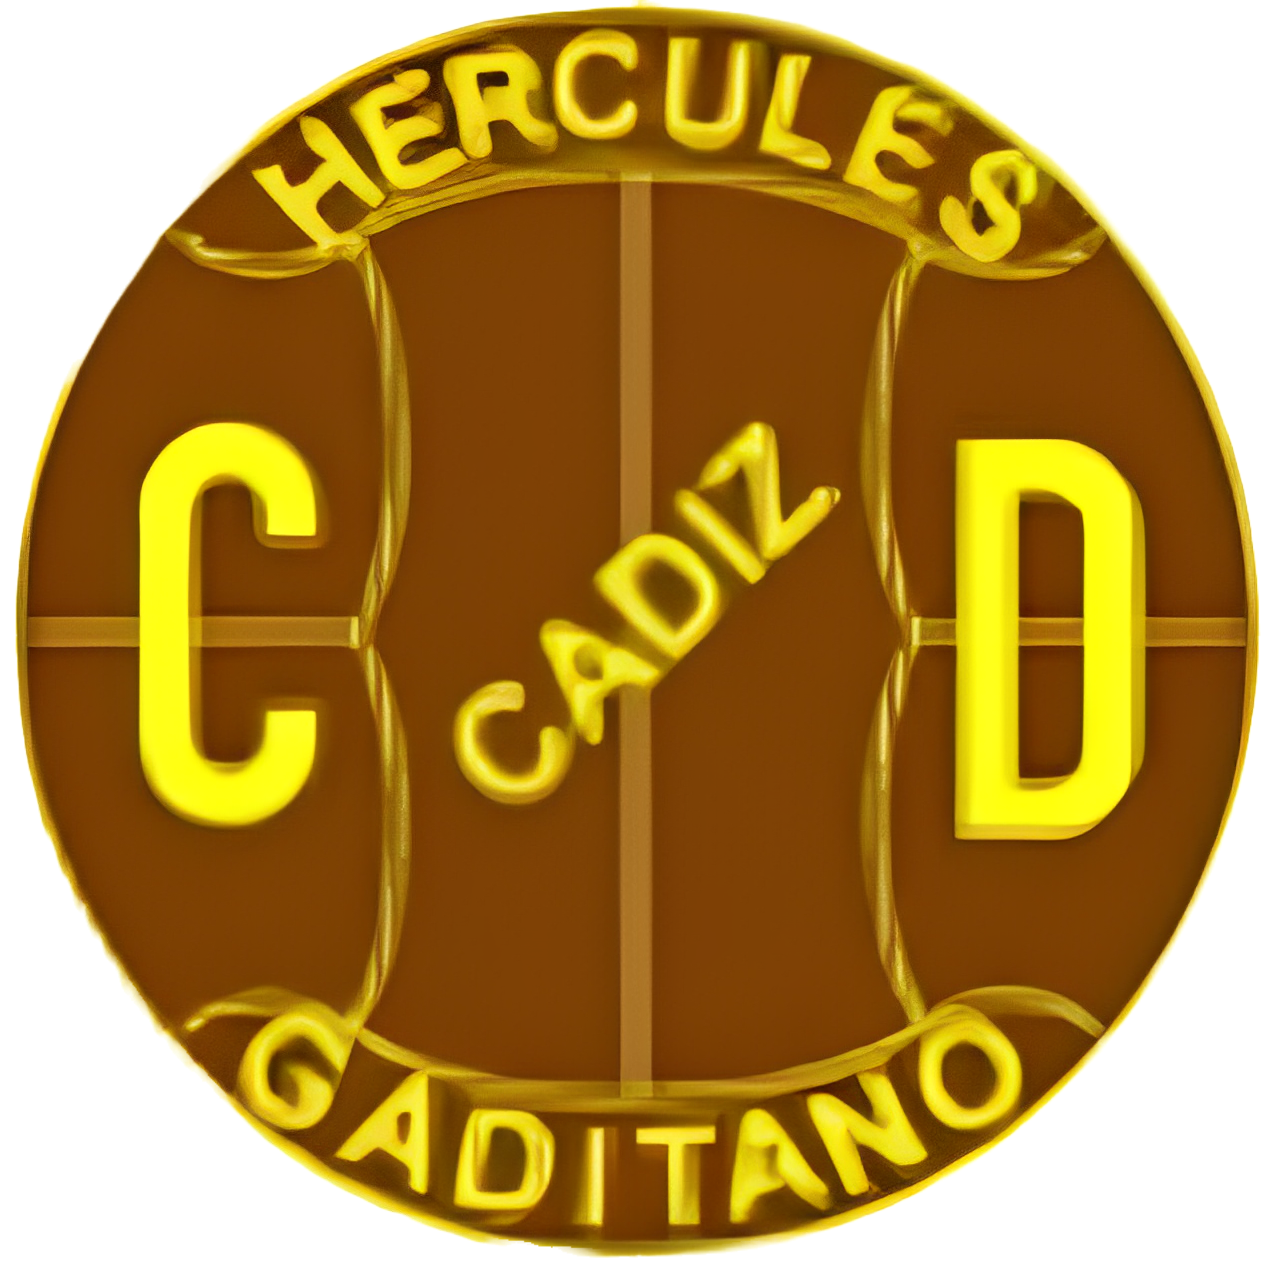 Hércules Cádiz